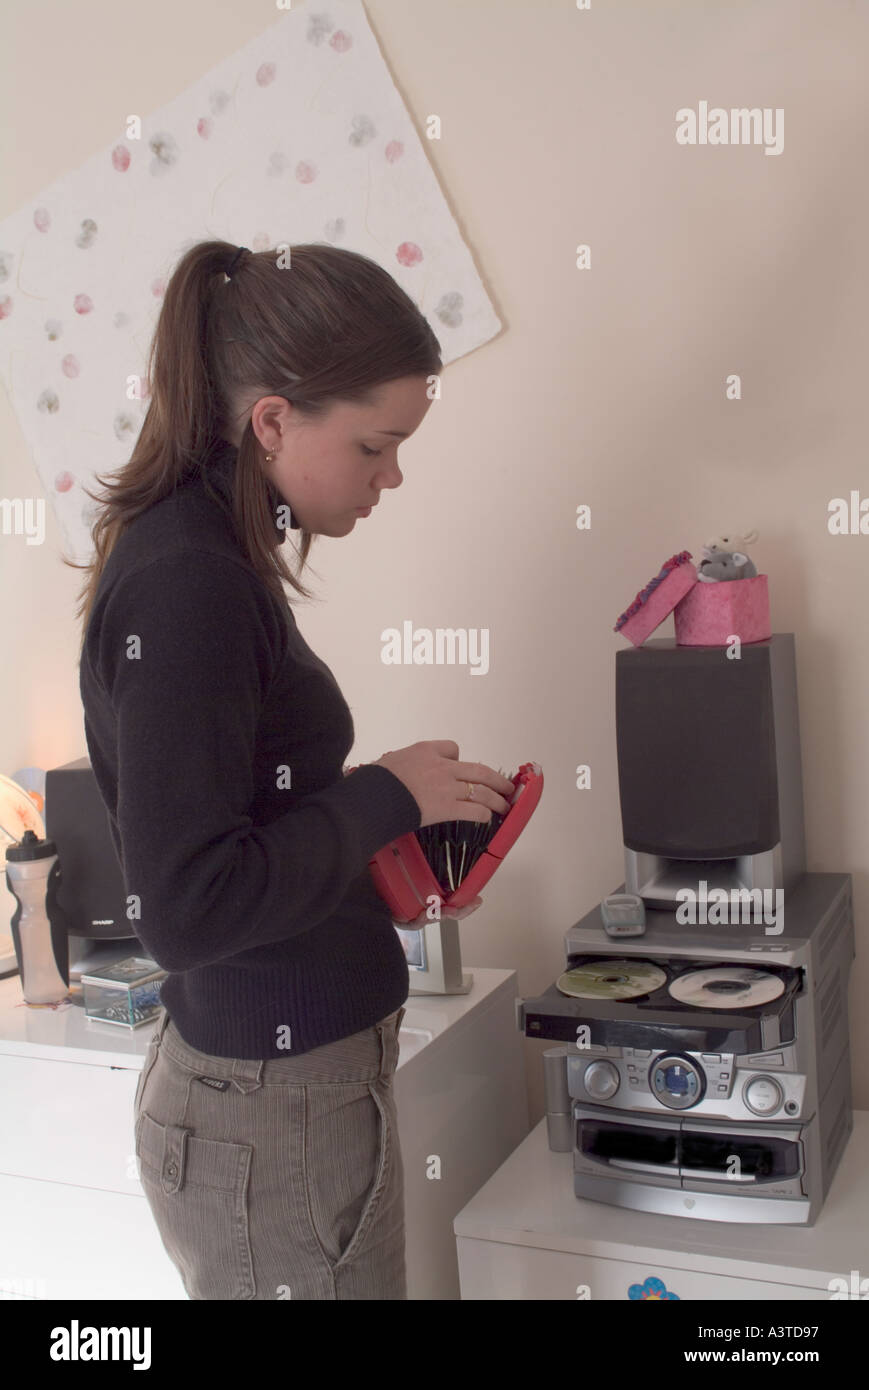 Teenager-Mädchen unter CDs von Halter zu CD-Player zulegen Stockfotografie  - Alamy